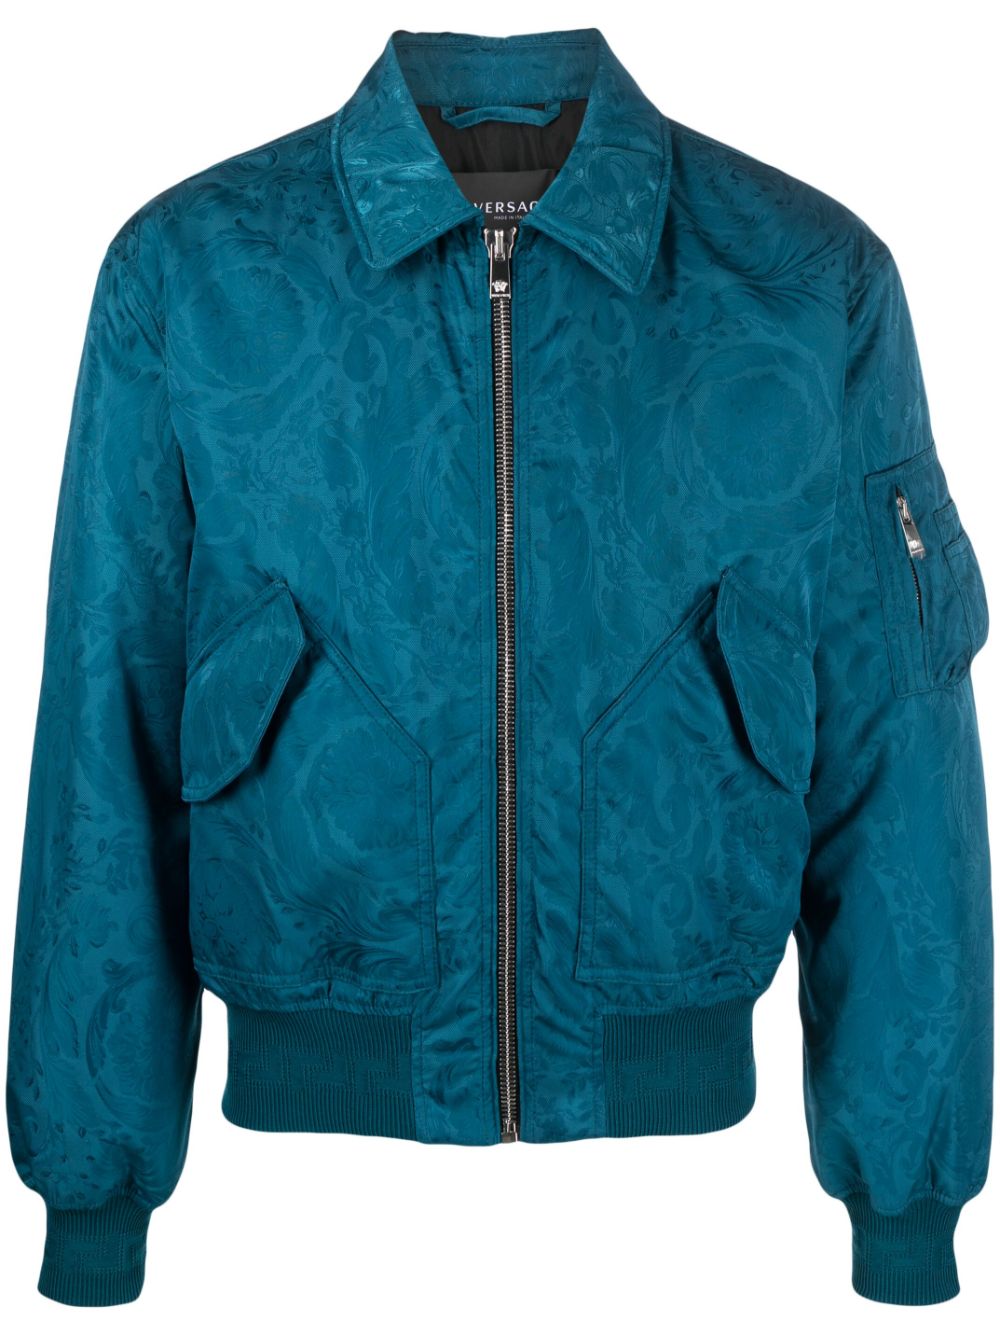 Versace Blue Bomber Jacket Shop | website.jkuat.ac.ke